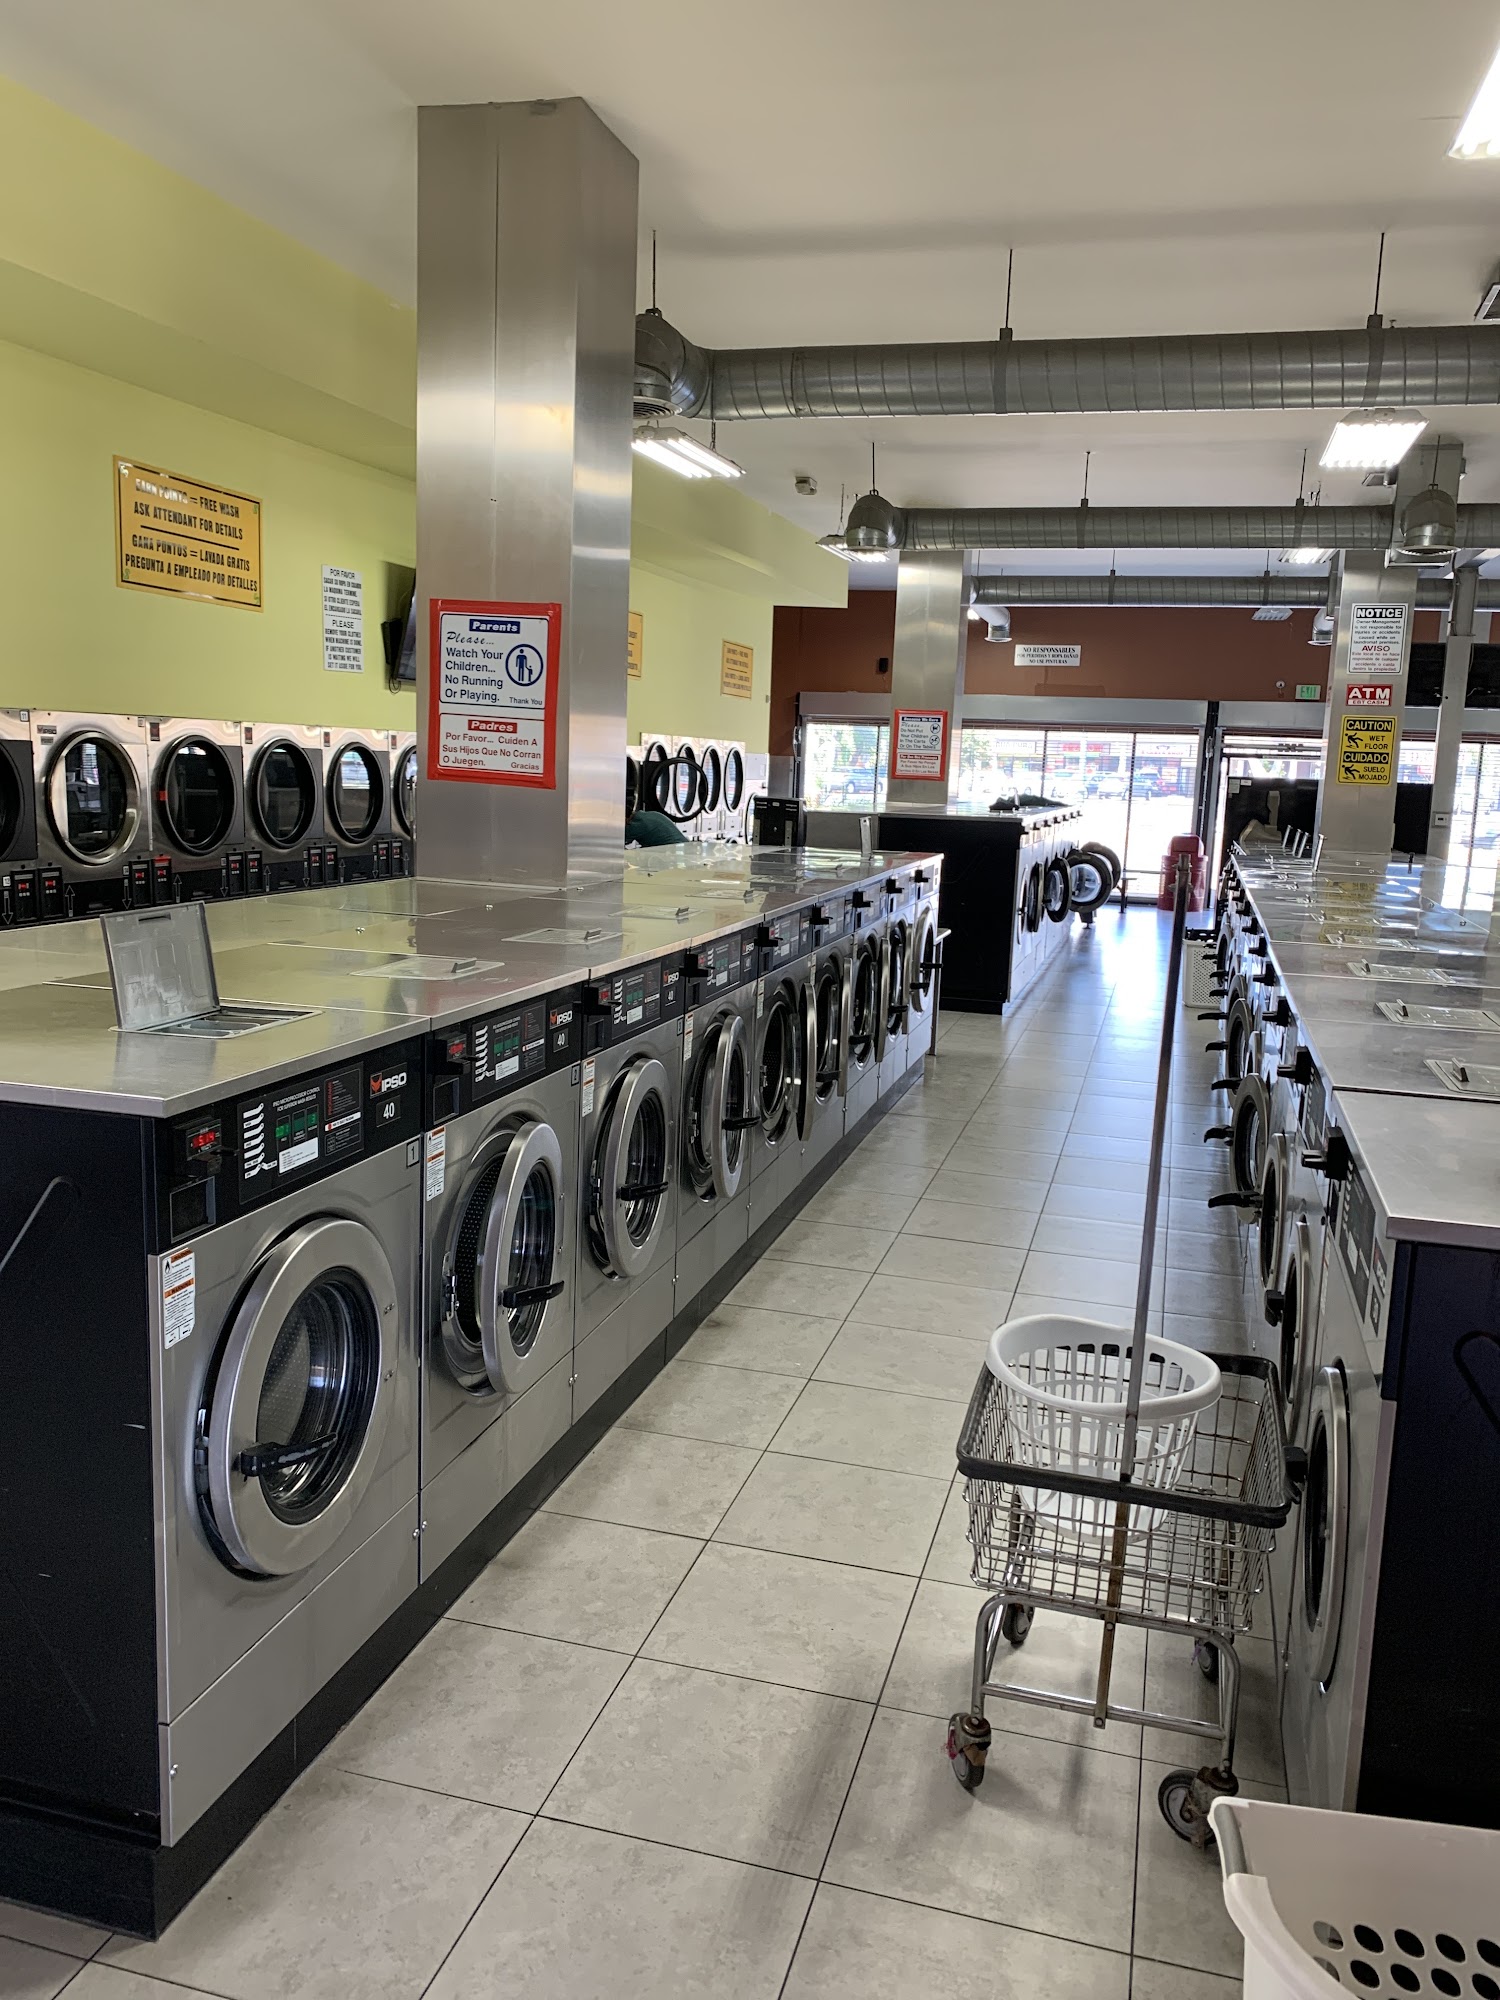 Alligator Laundry | Laundromat | Wash & Fold Laundry Services